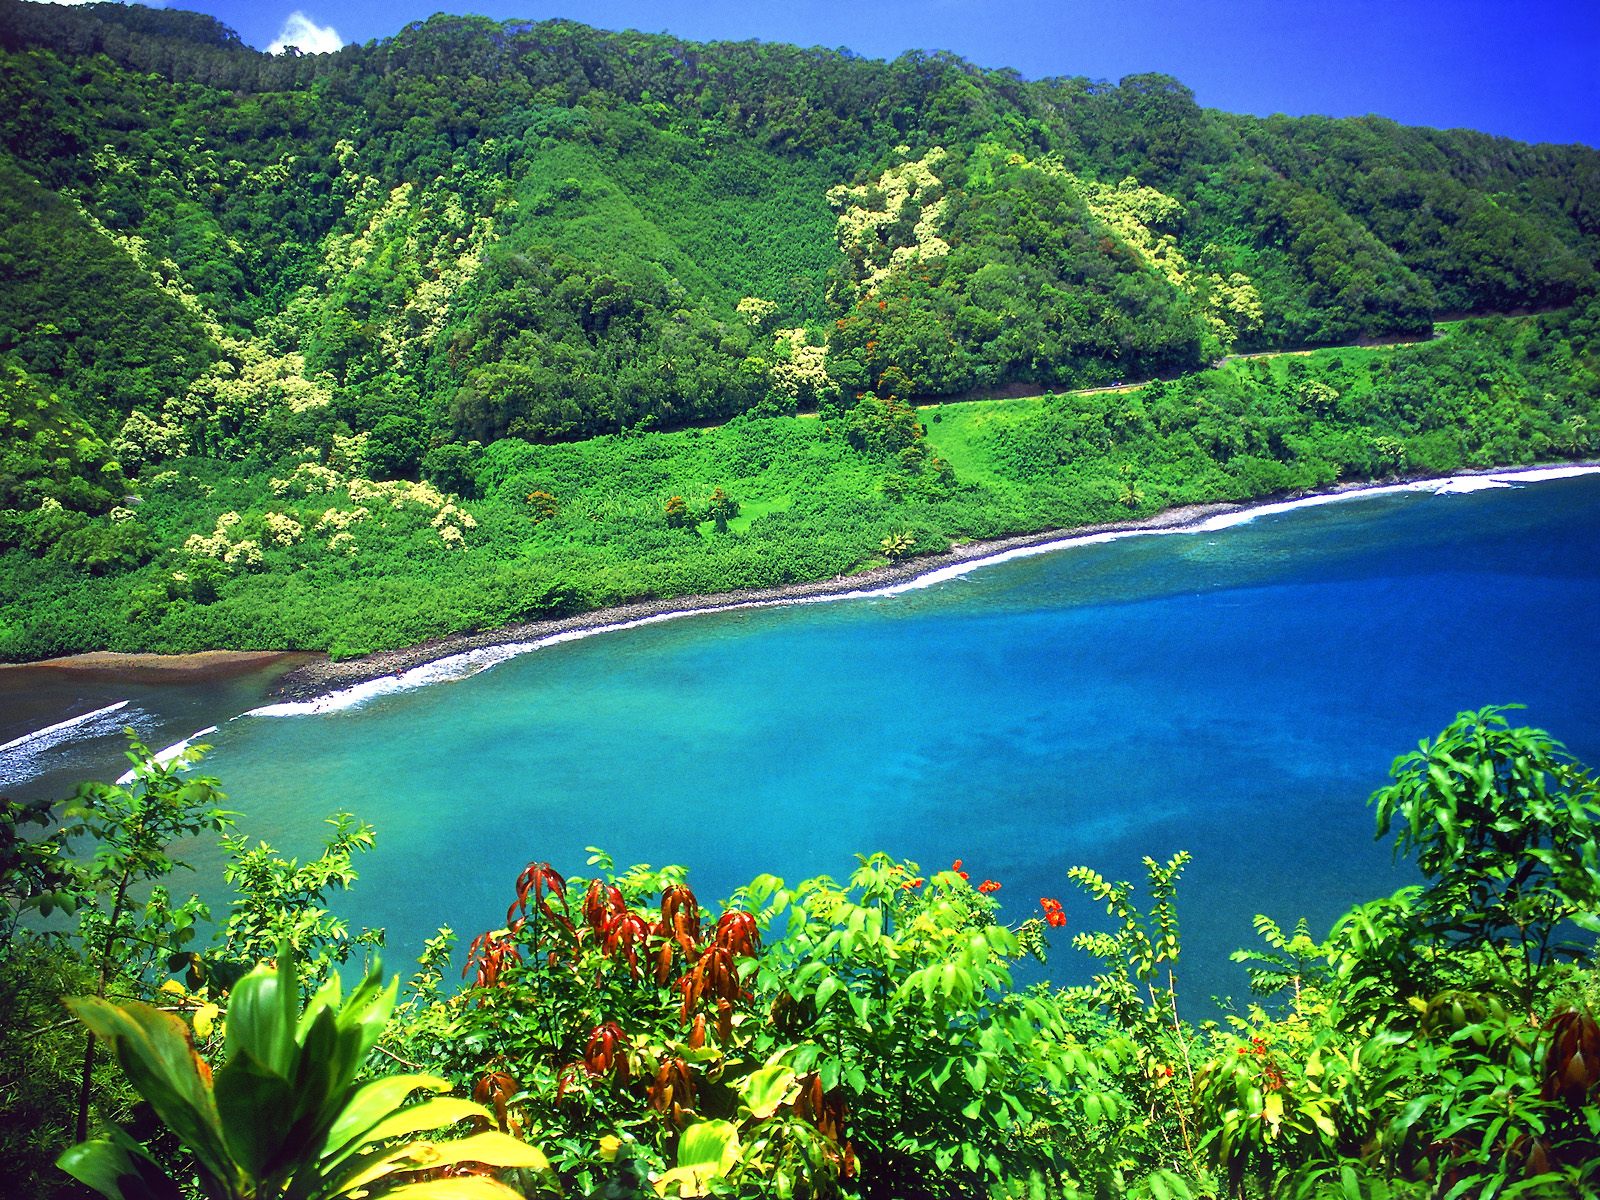 http://2.bp.blogspot.com/-H_WZAv9OsOw/Tik9tD7PCBI/AAAAAAAAAtc/kjTCQwsq0rs/s1600/Road+to+Hana%252C+Turquoise+Lagoon%252C+Maui%252C+Hawaii.jpg